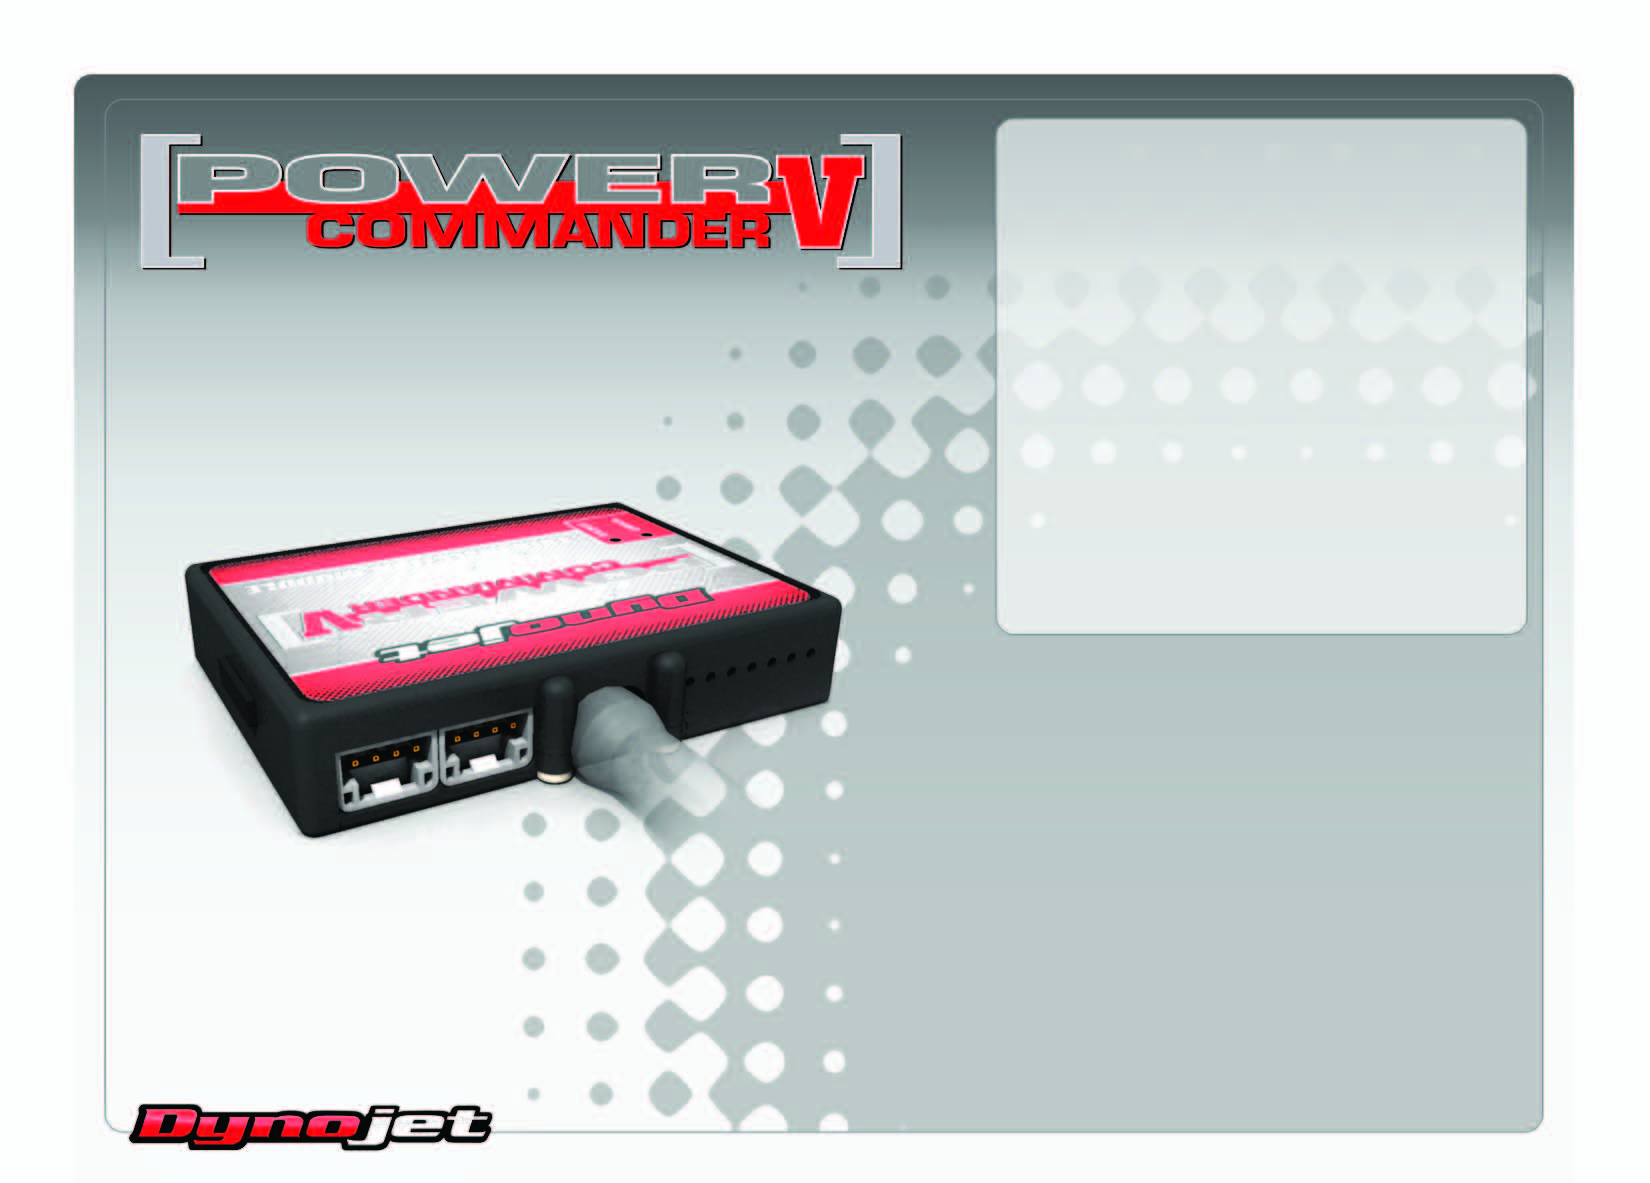 LISTA DELLE PARTI 2011-2012 Suzuki GSR750 Istruzioni di Installazione 1 Power Commander 1 Cavo USB 1 CD-ROM 1 Guida Installazione 2 Adesivi Power Commander 2 Adesivi Dynojet 2 Striscia di Velcro 1